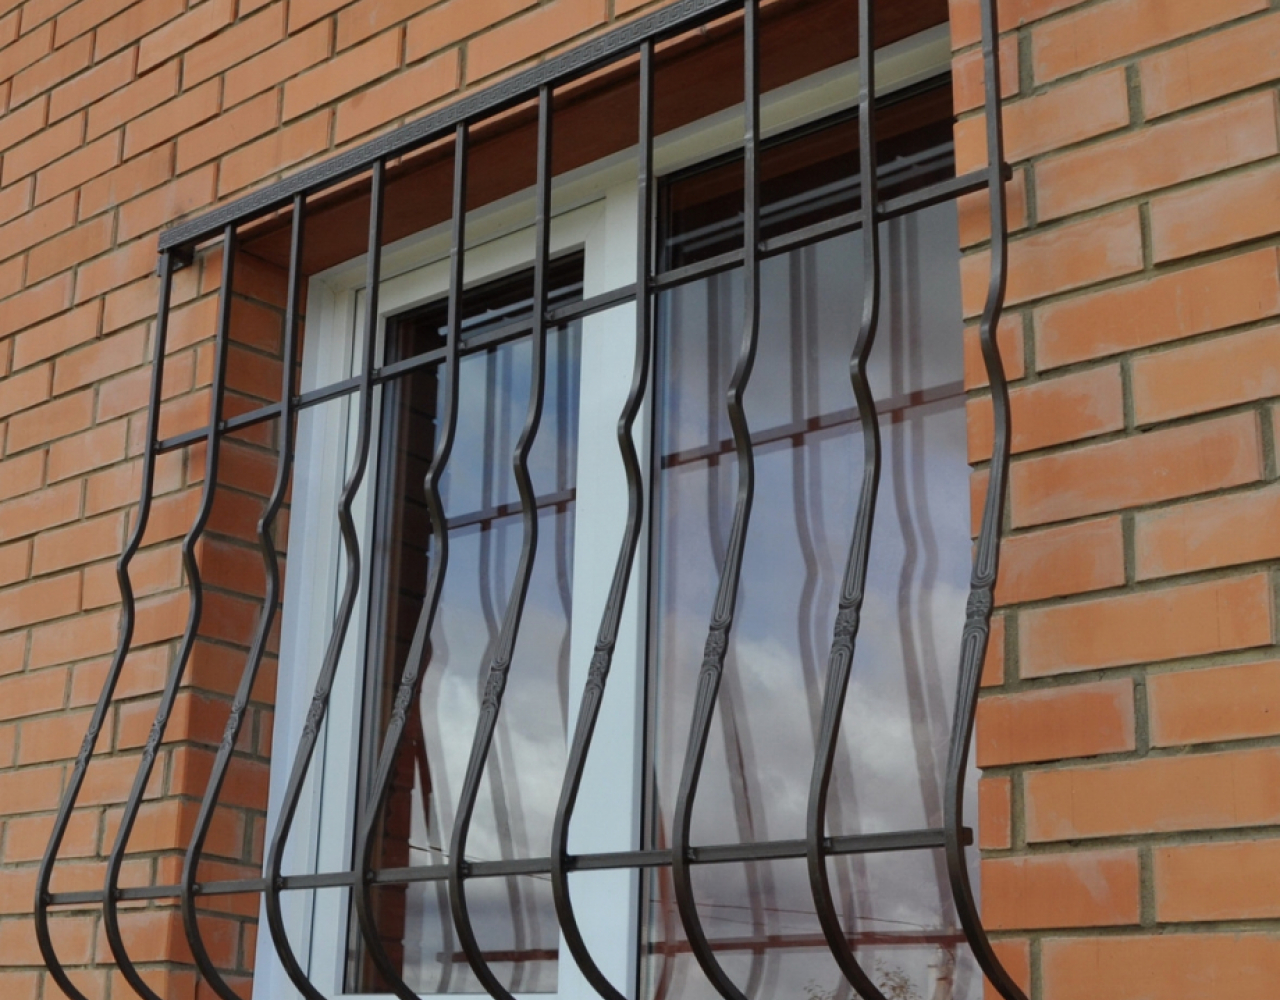 Классическая дутая кованая решетка на окно КР-099